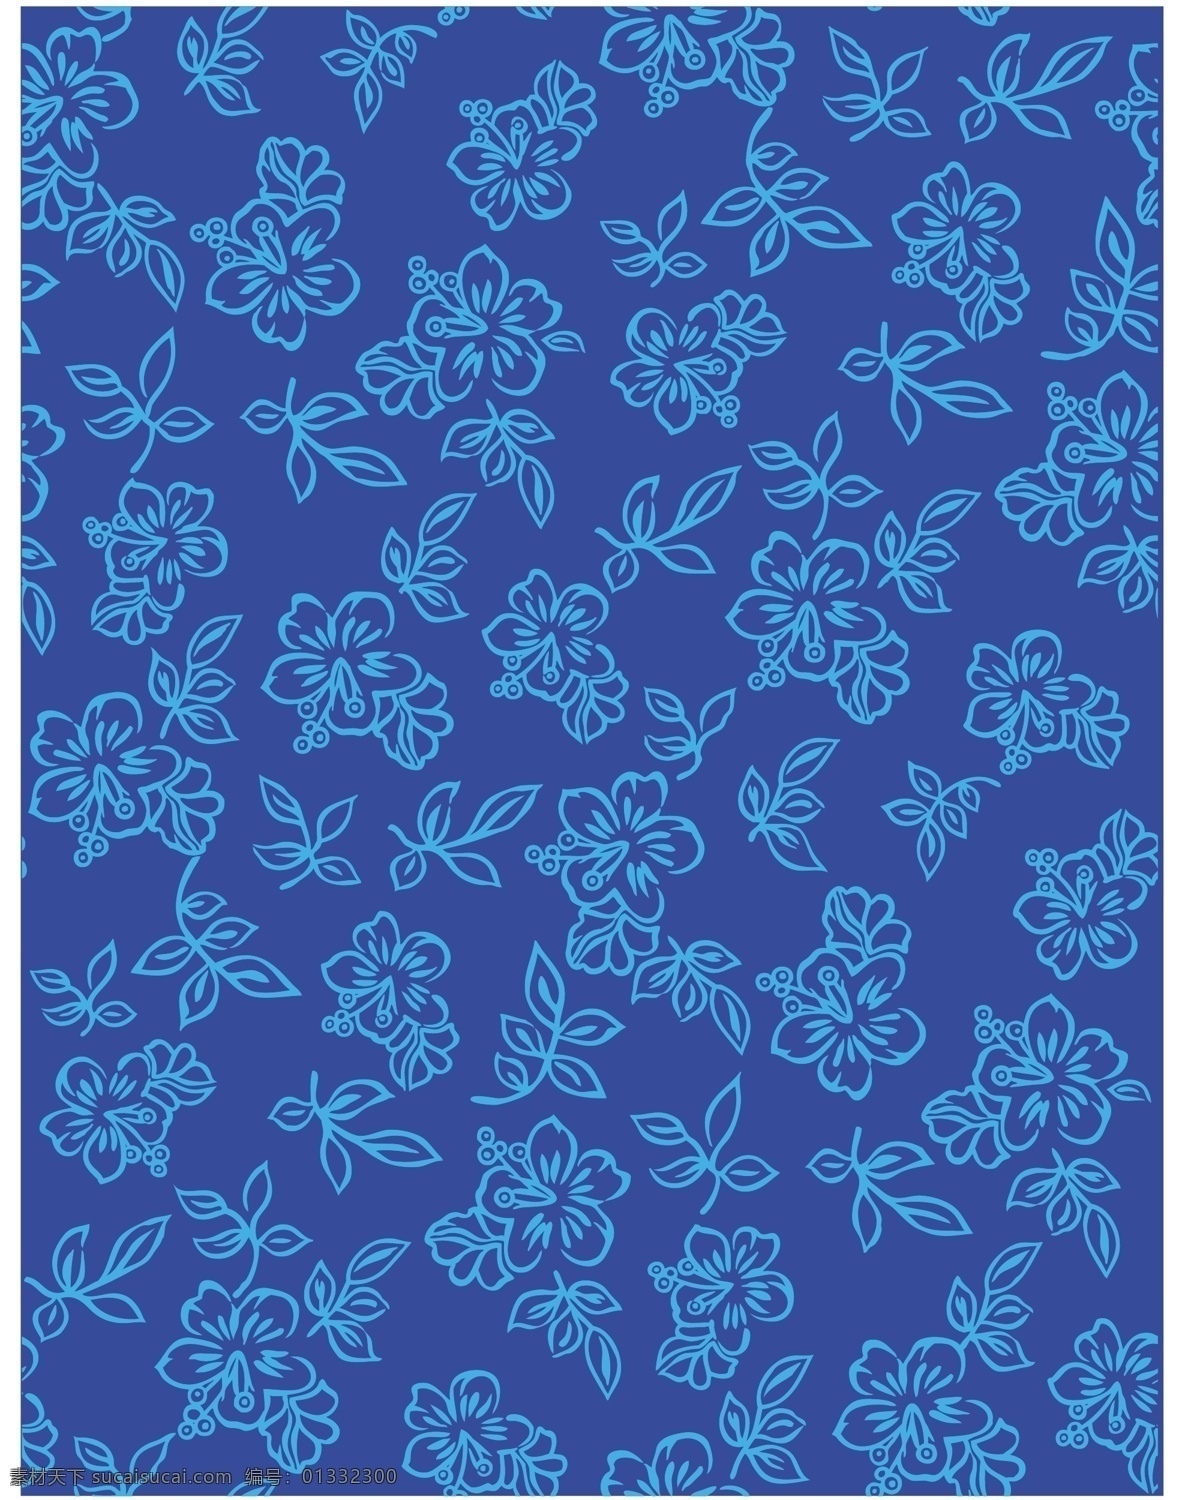 矢量 蓝色 暗 纹 背景 花朵 花纹 可爱 墙纸 矢量素材 树叶 素雅 小花 小碎花 矢量图 花纹花边